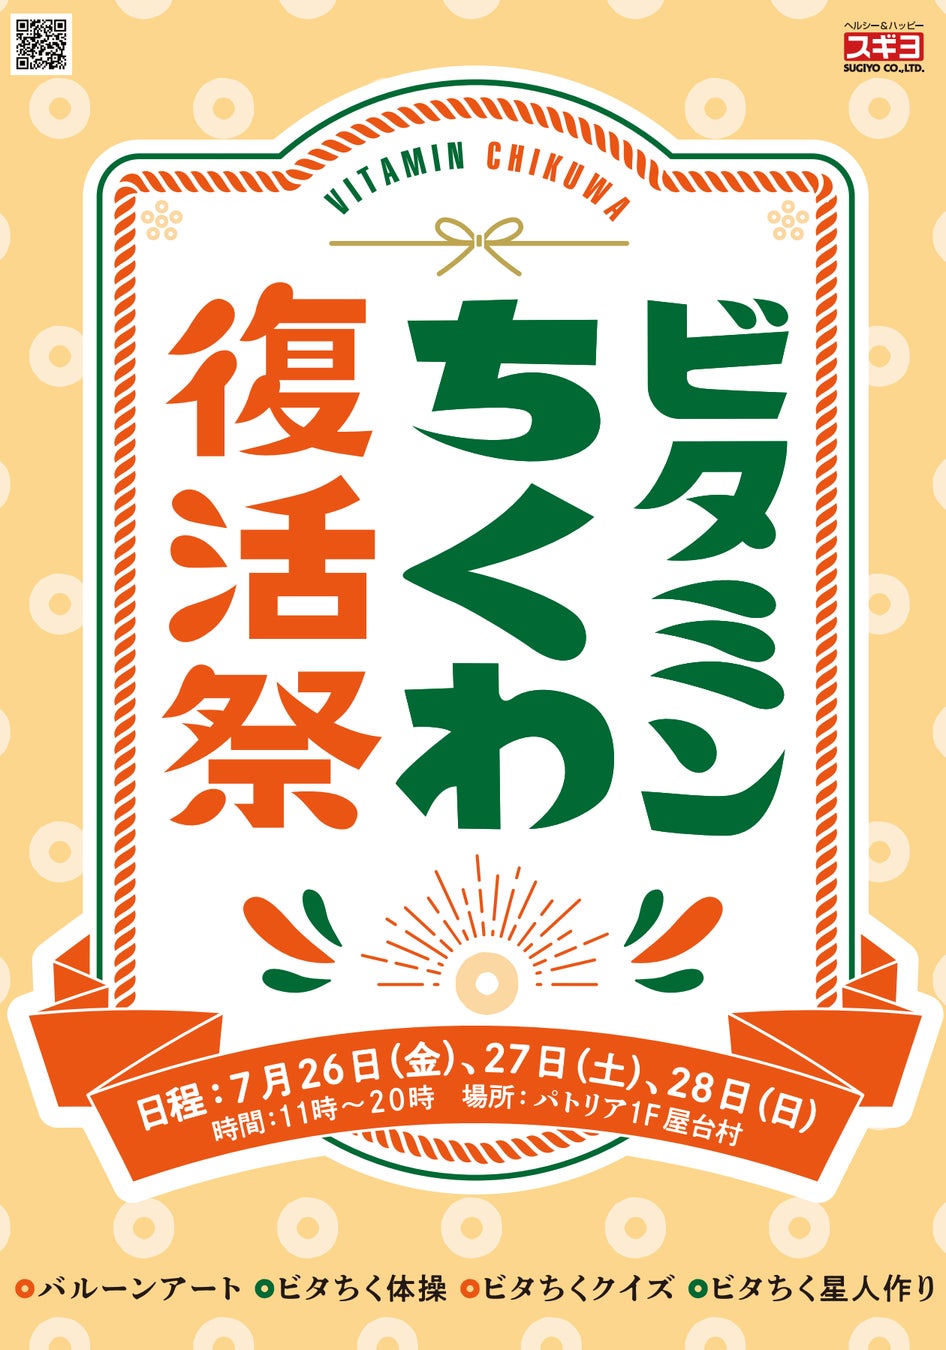 佐賀県初となる生搾りオレンジジュース自販機「IJOOZ」 九州佐賀国際空港で稼働開始